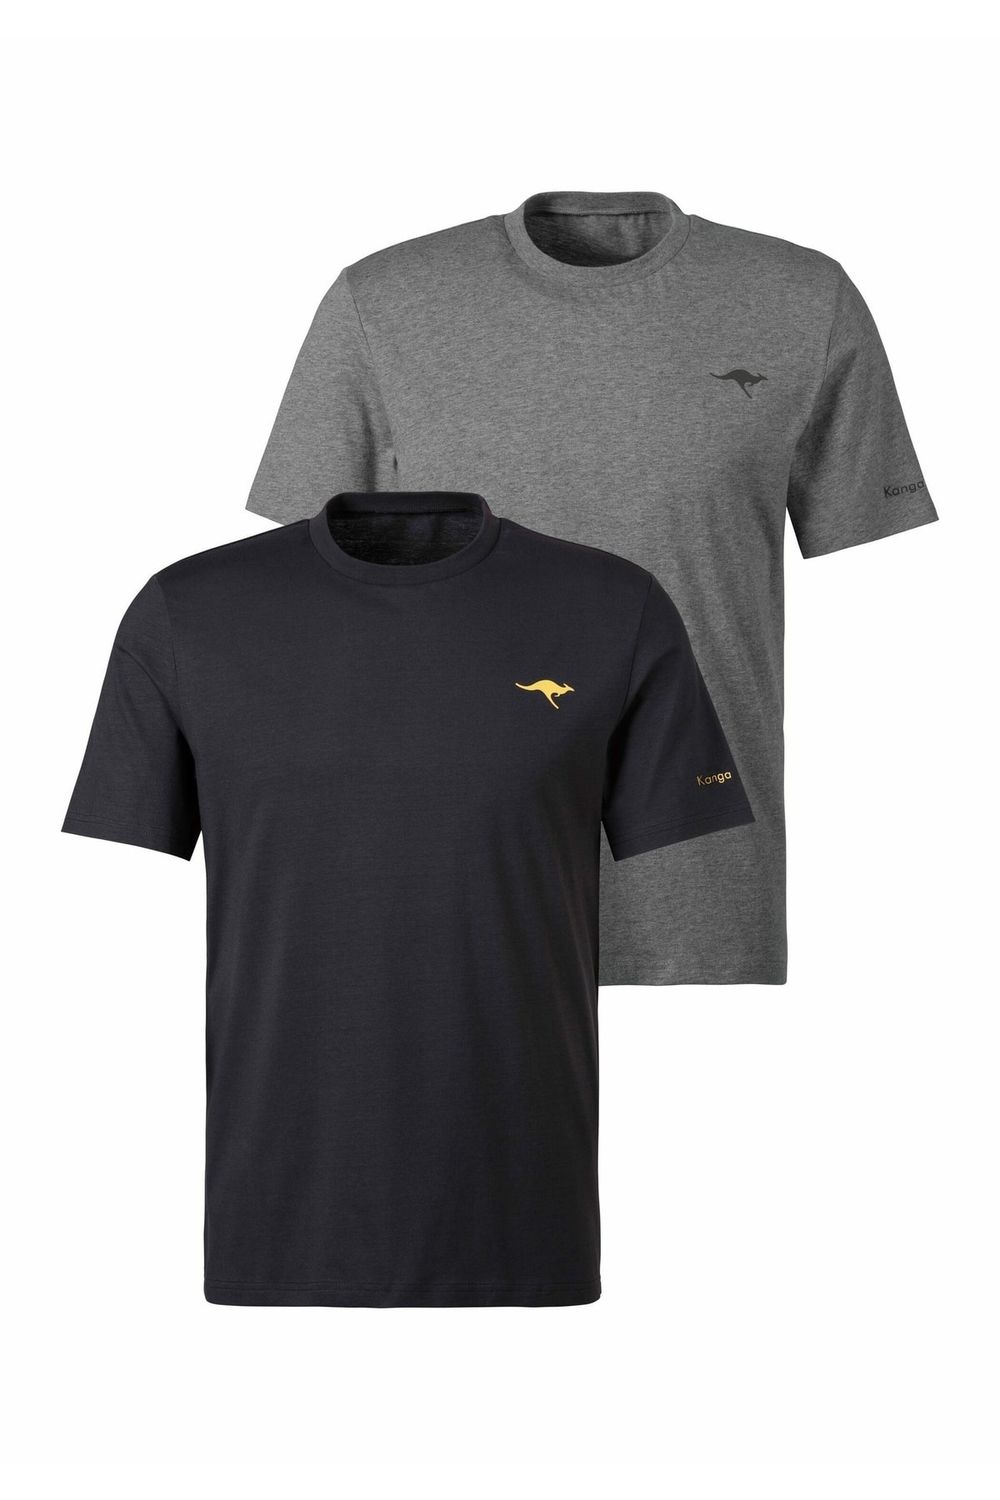 Kangaroos T-Shirt - - Grau Trendyol - Fit Regular